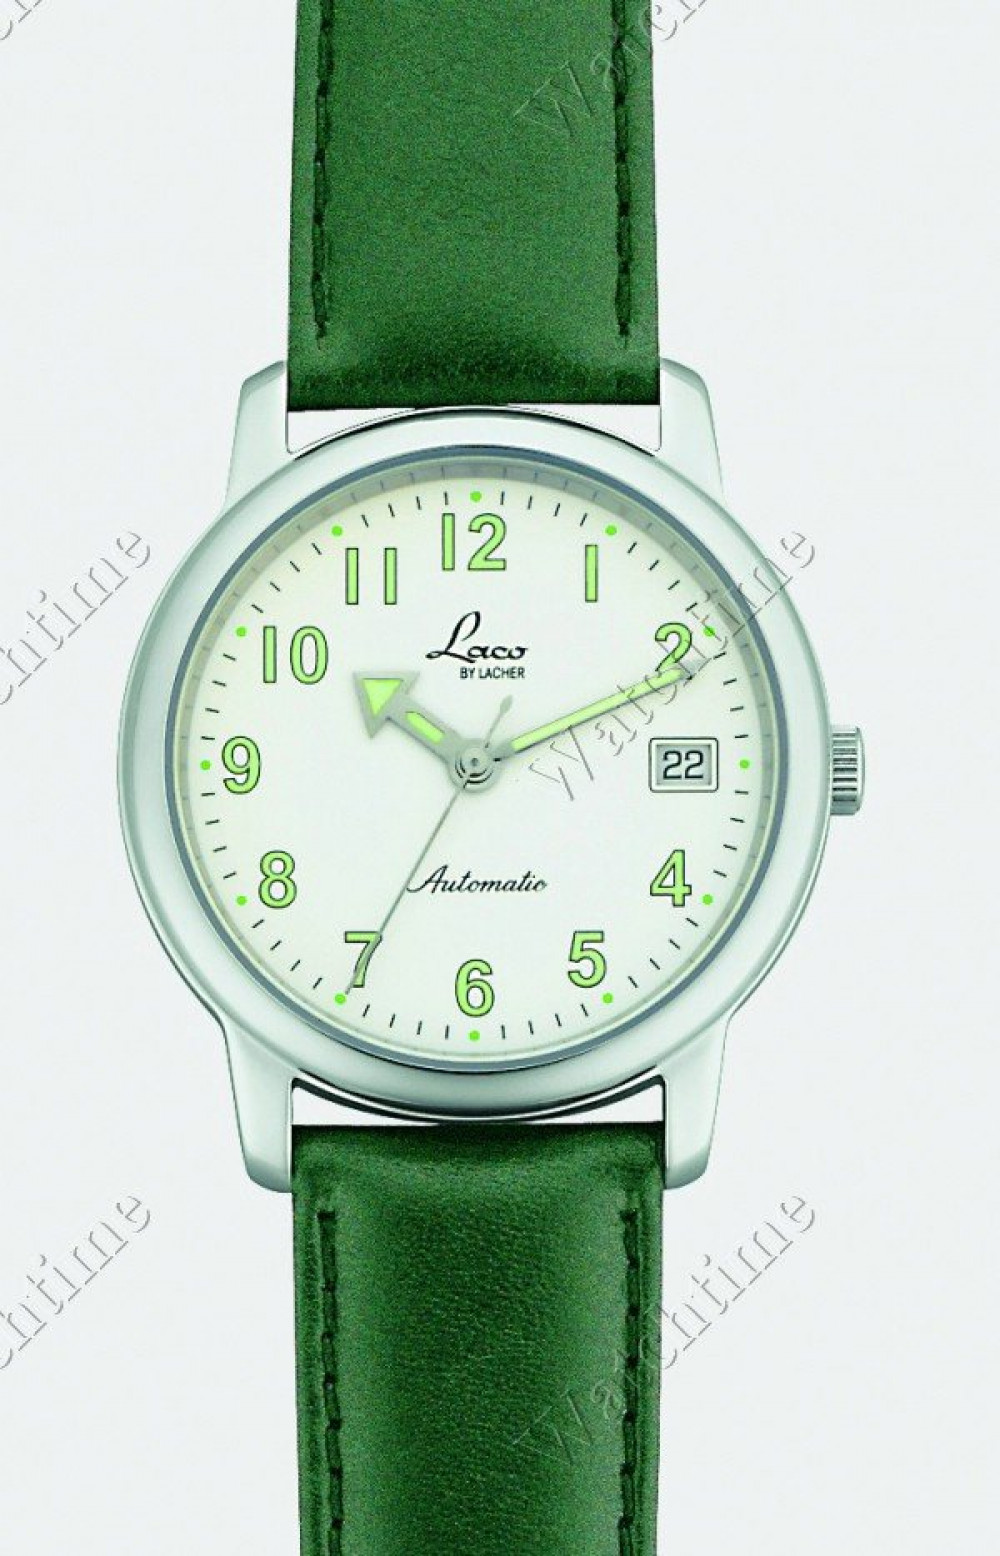 Zegarek firmy Laco, model 6545 Automatik